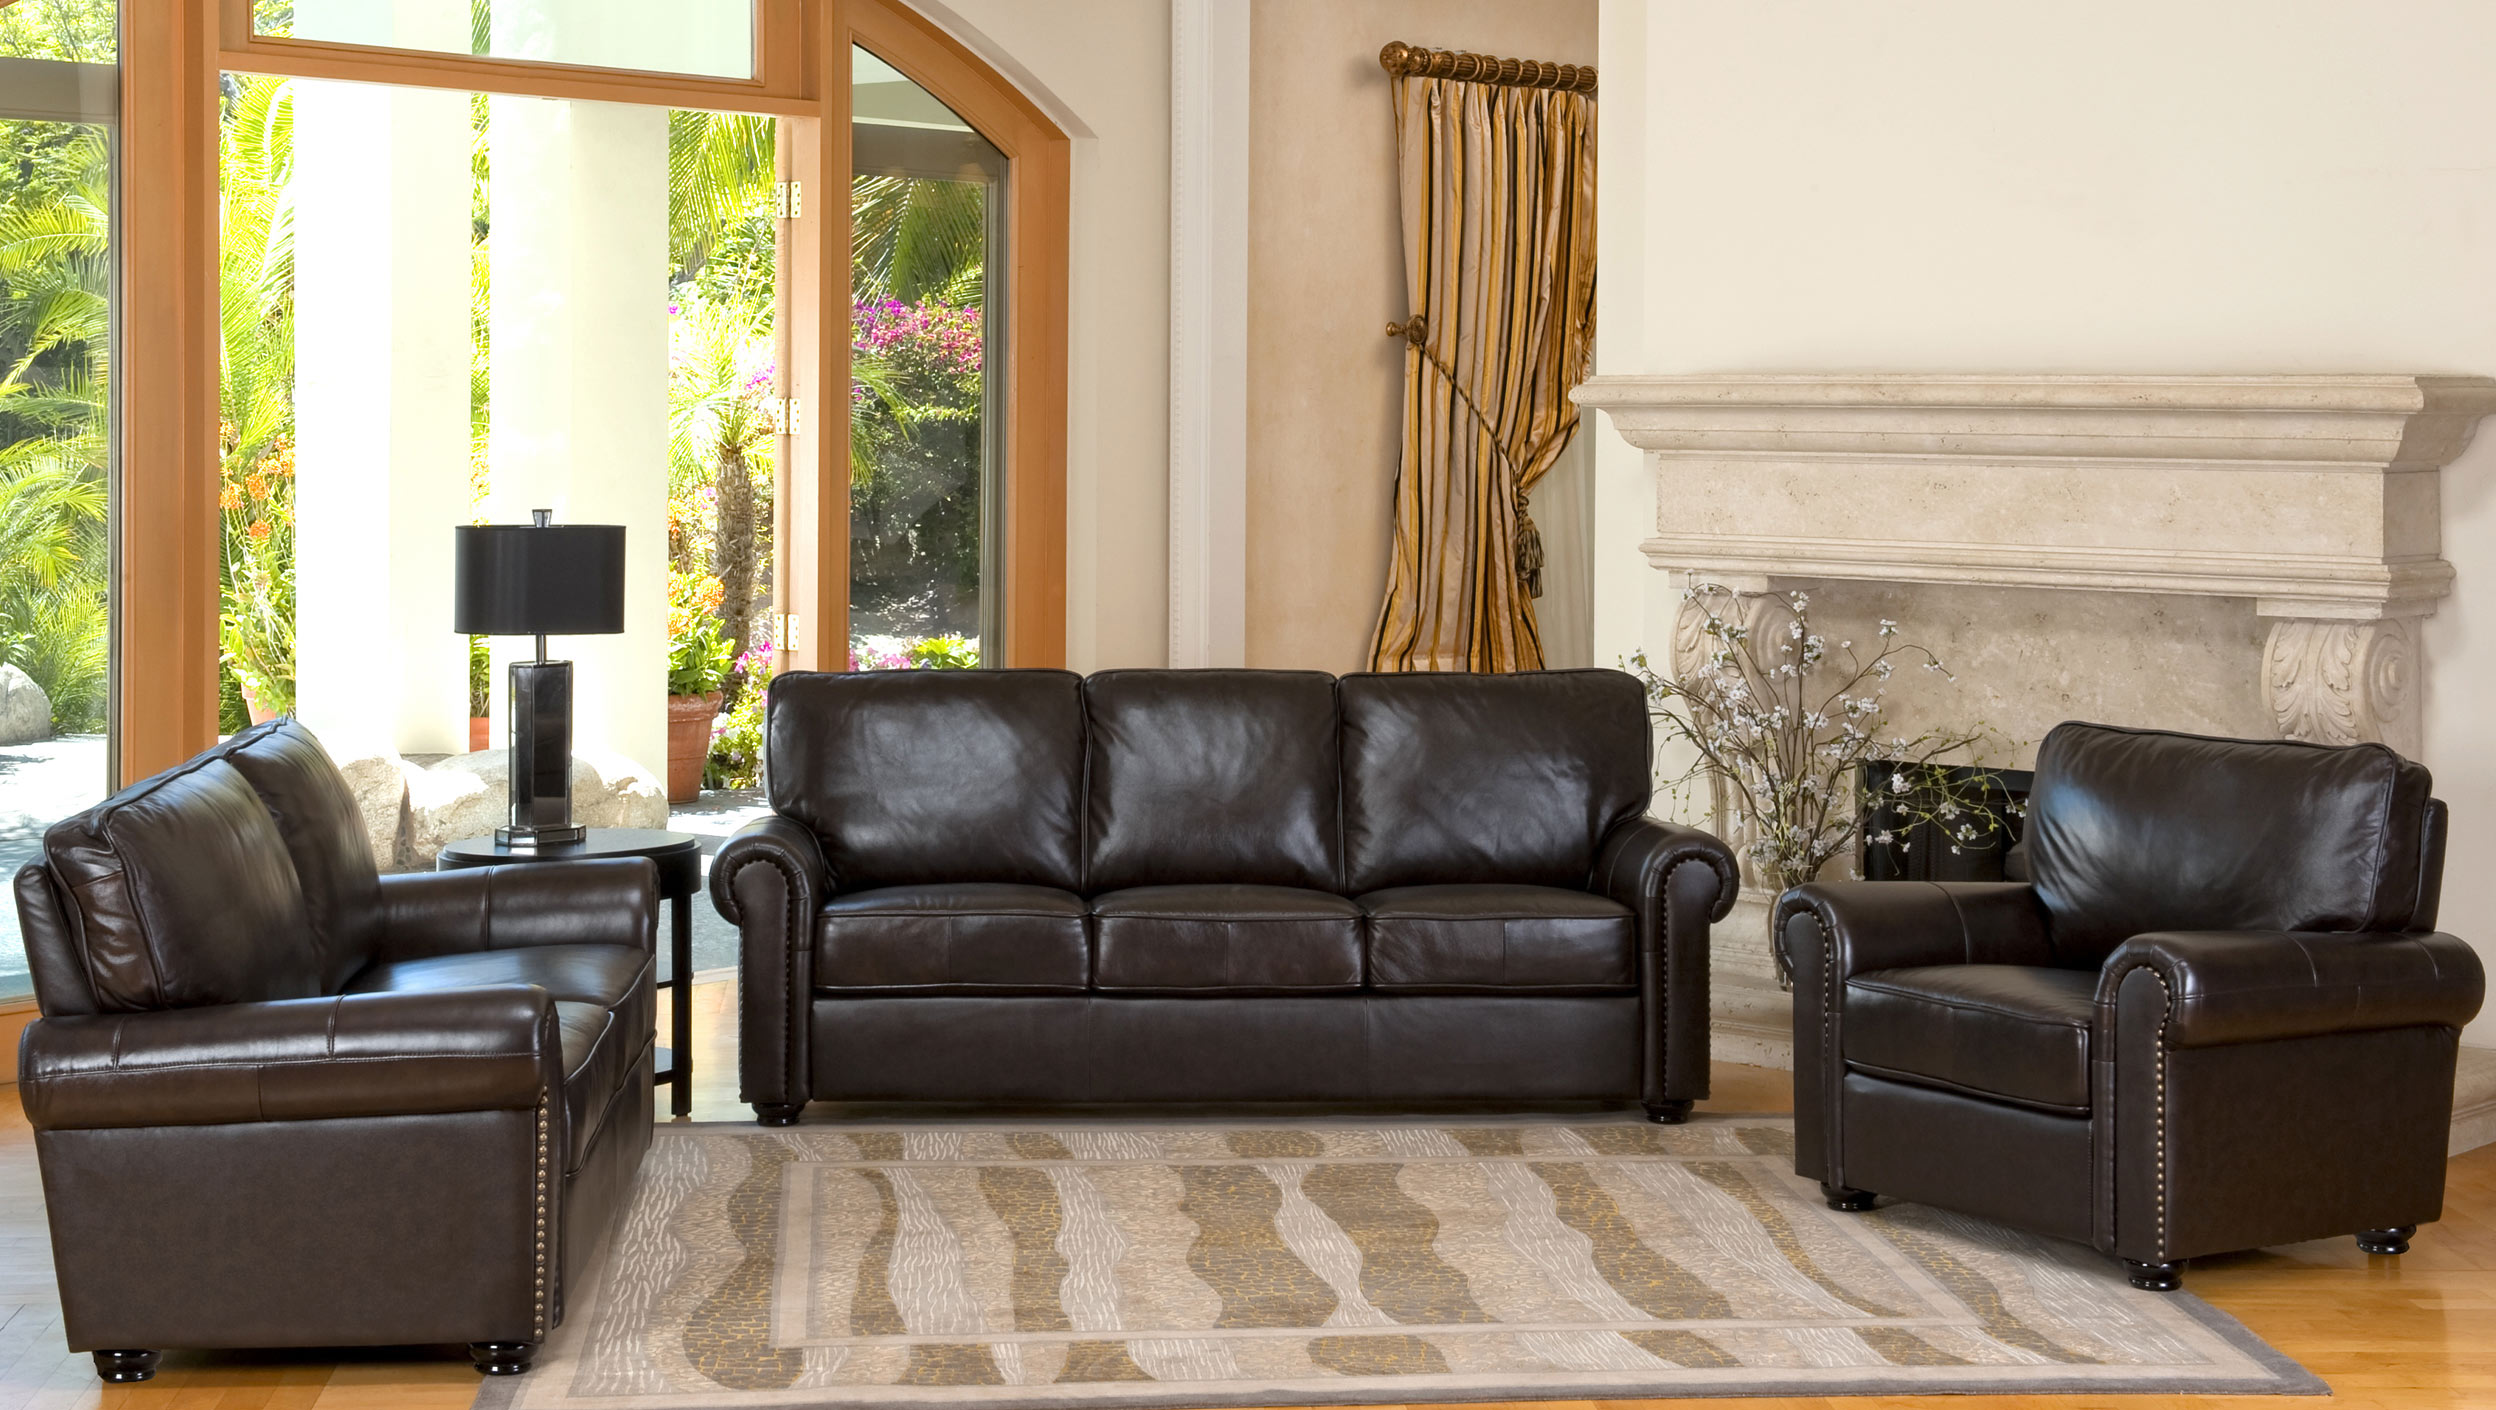 display living room furniture sets